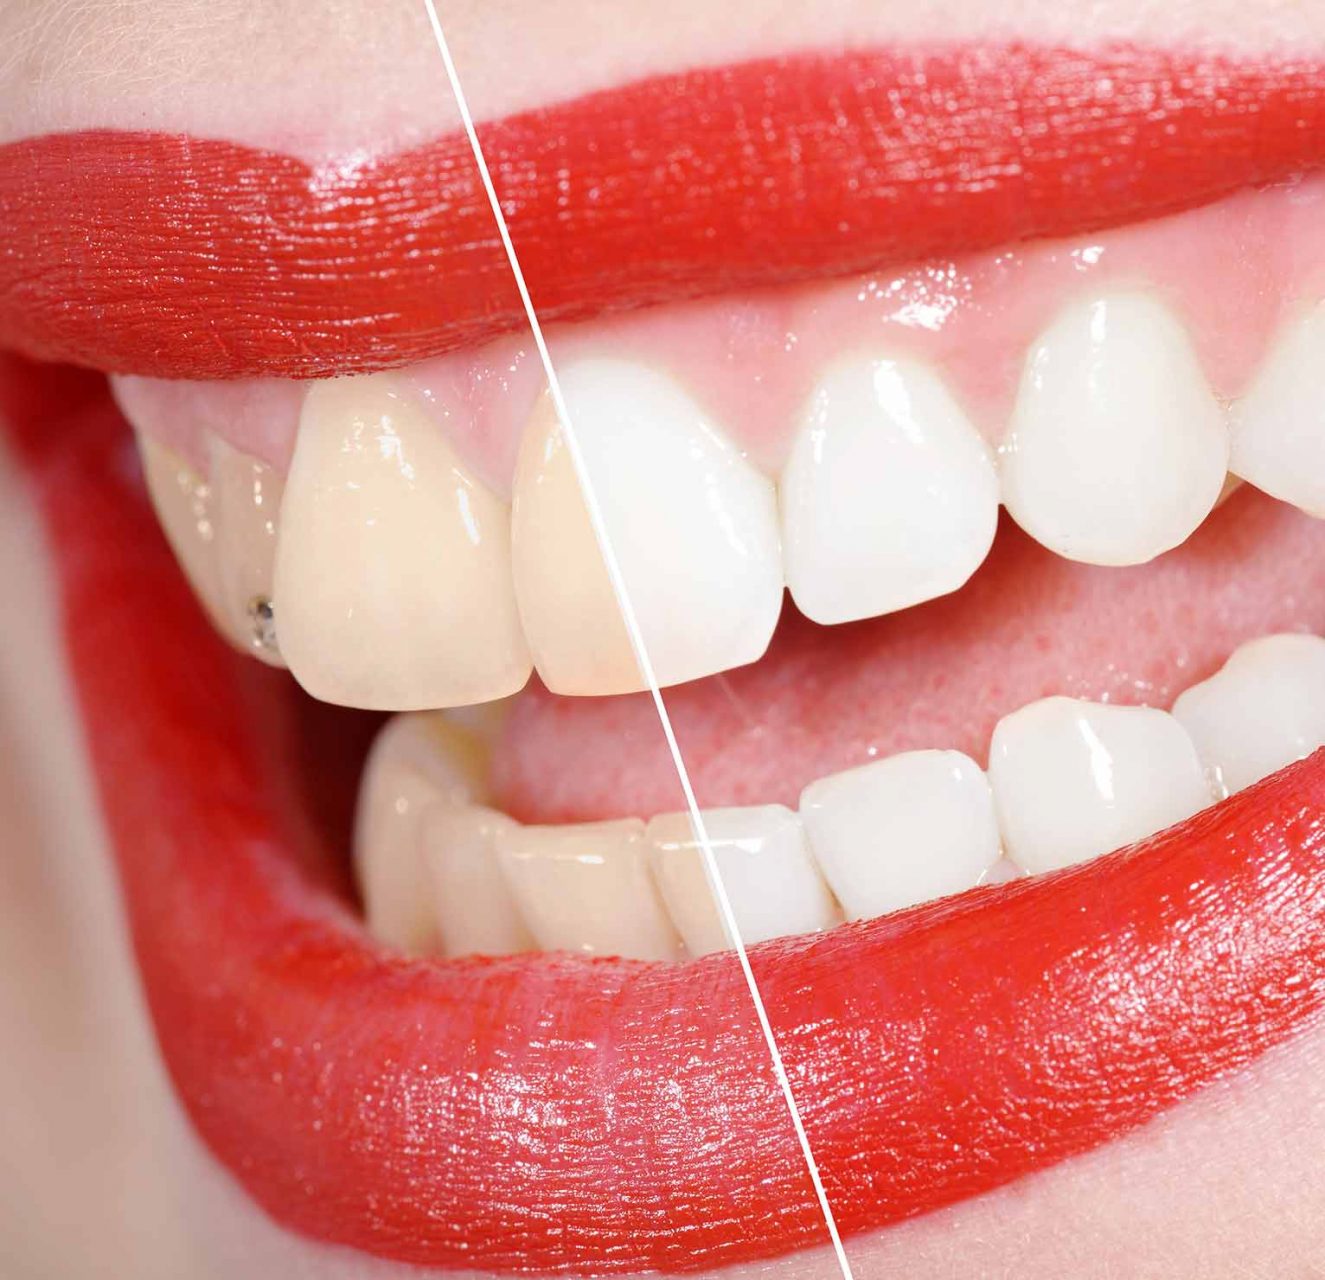 Comparaison avant et après le blanchiment dentaire